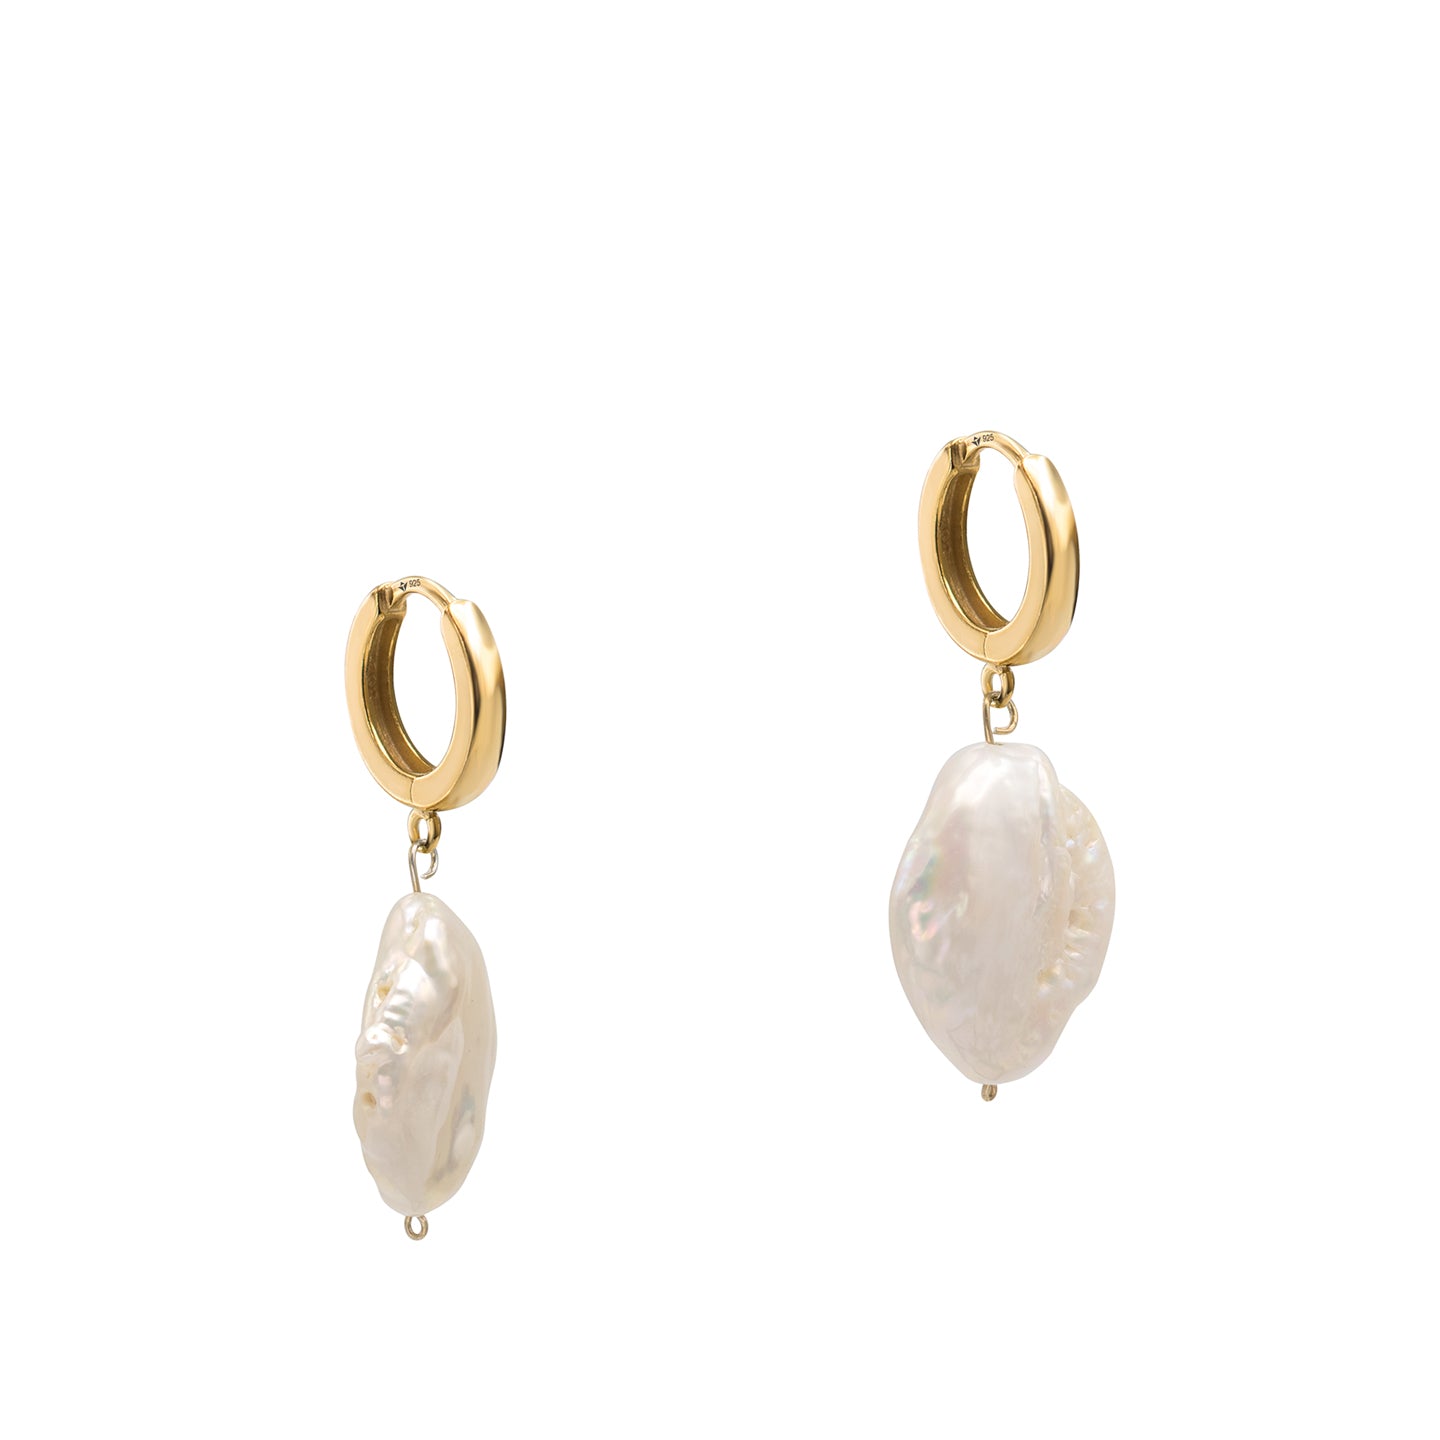 Cercei argint cu perle baroc Authentic Spirit - placati aur galben 18K